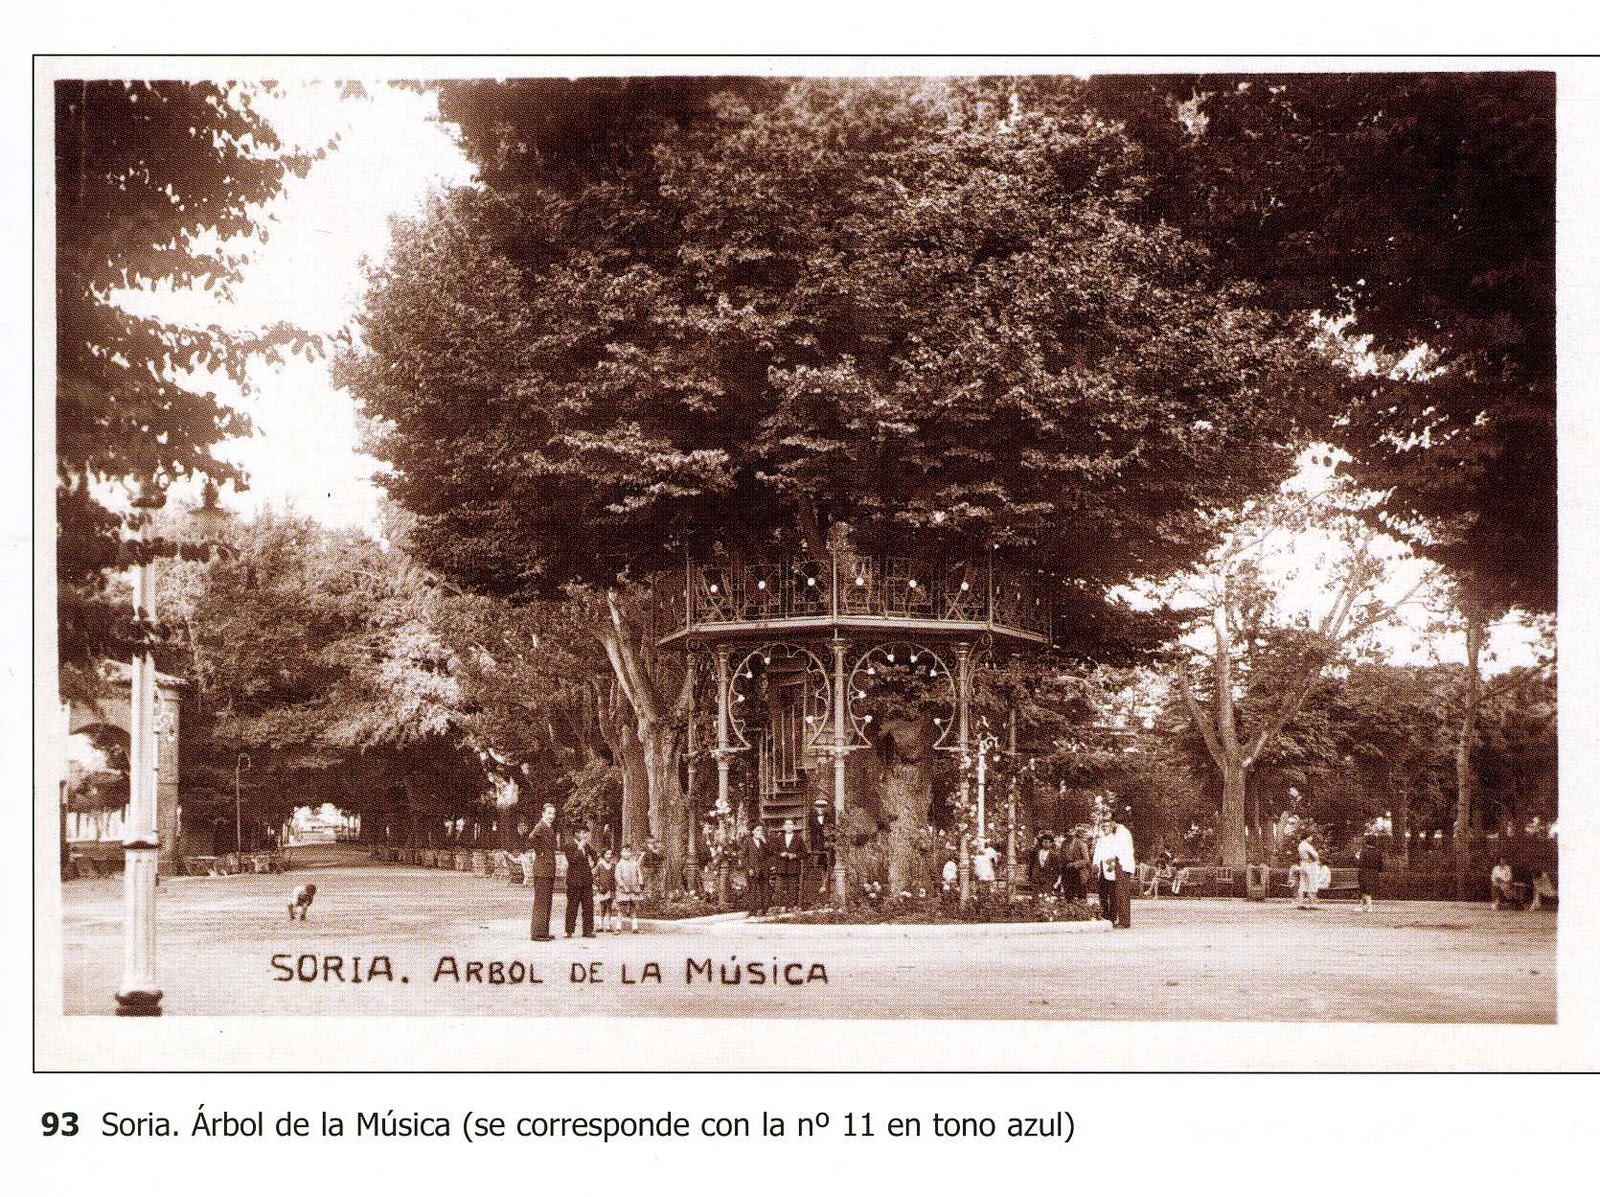 VENERABLES ÁRBOLES : José Pascual - El árbol de la música de Soria